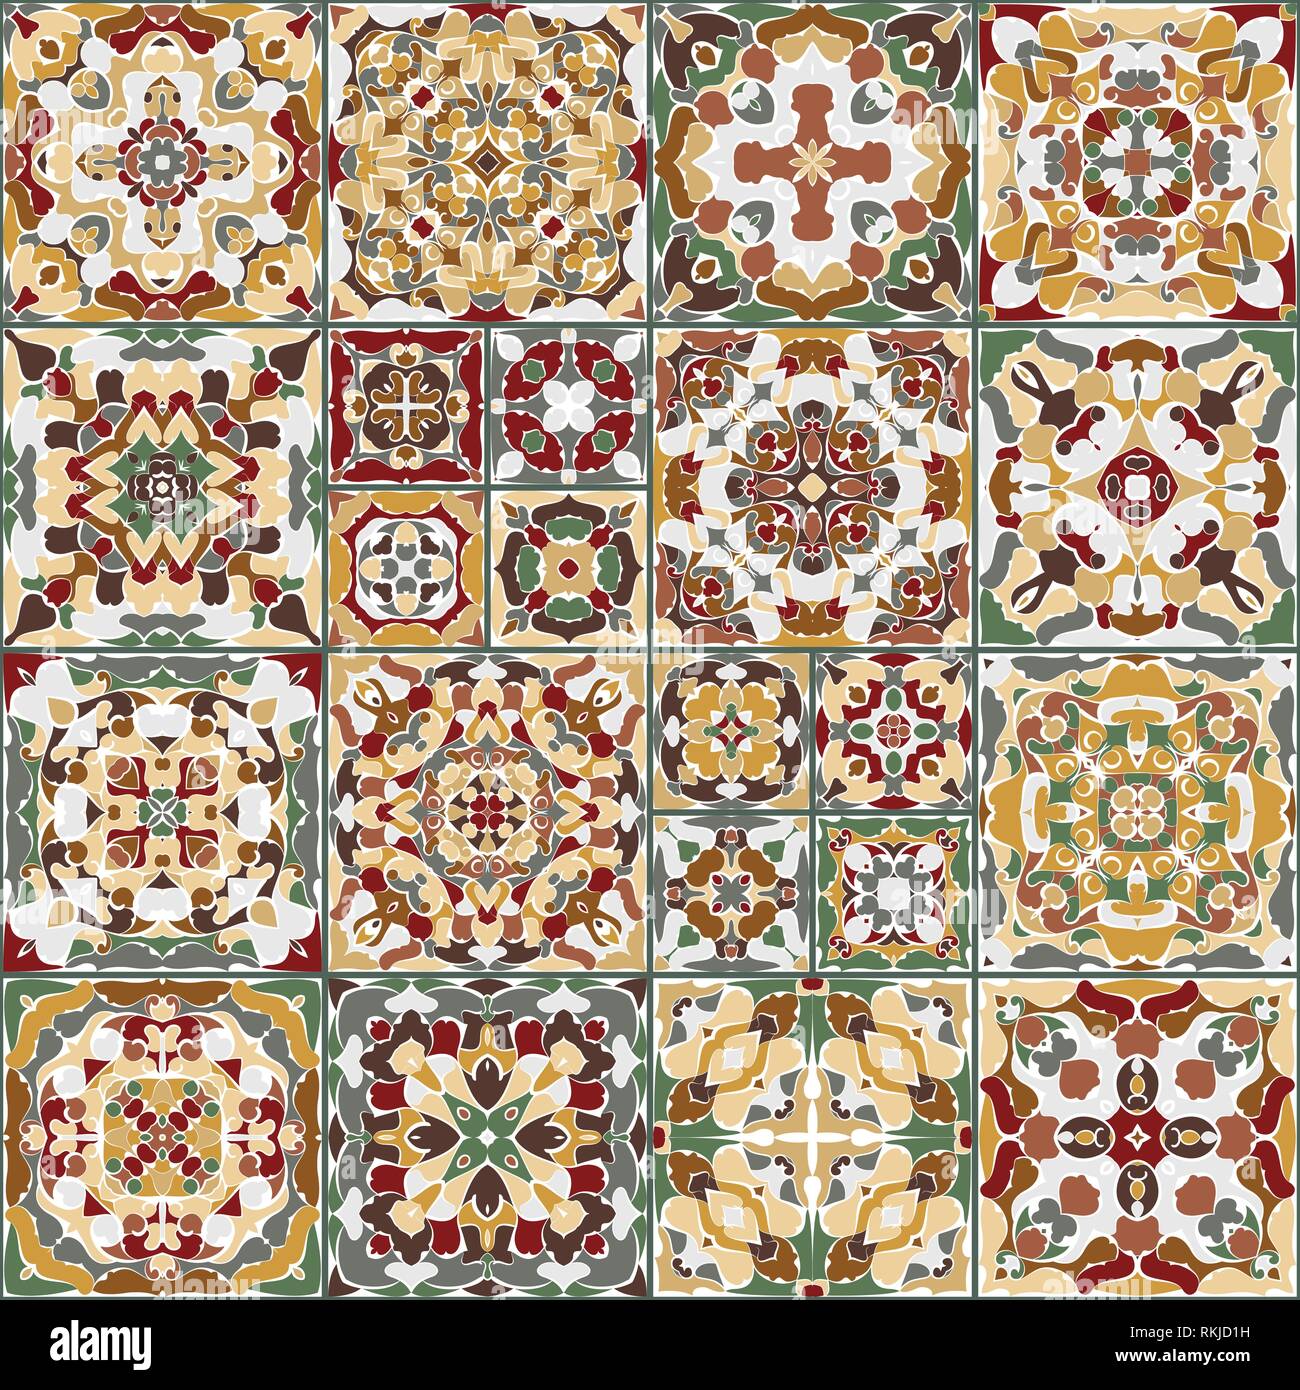 Eine Sammlung von Keramikfliesen in hellen Farben. Eine Reihe von quadratischen Muster im ethnischen Stil. Vector Illustration. Stock Vektor